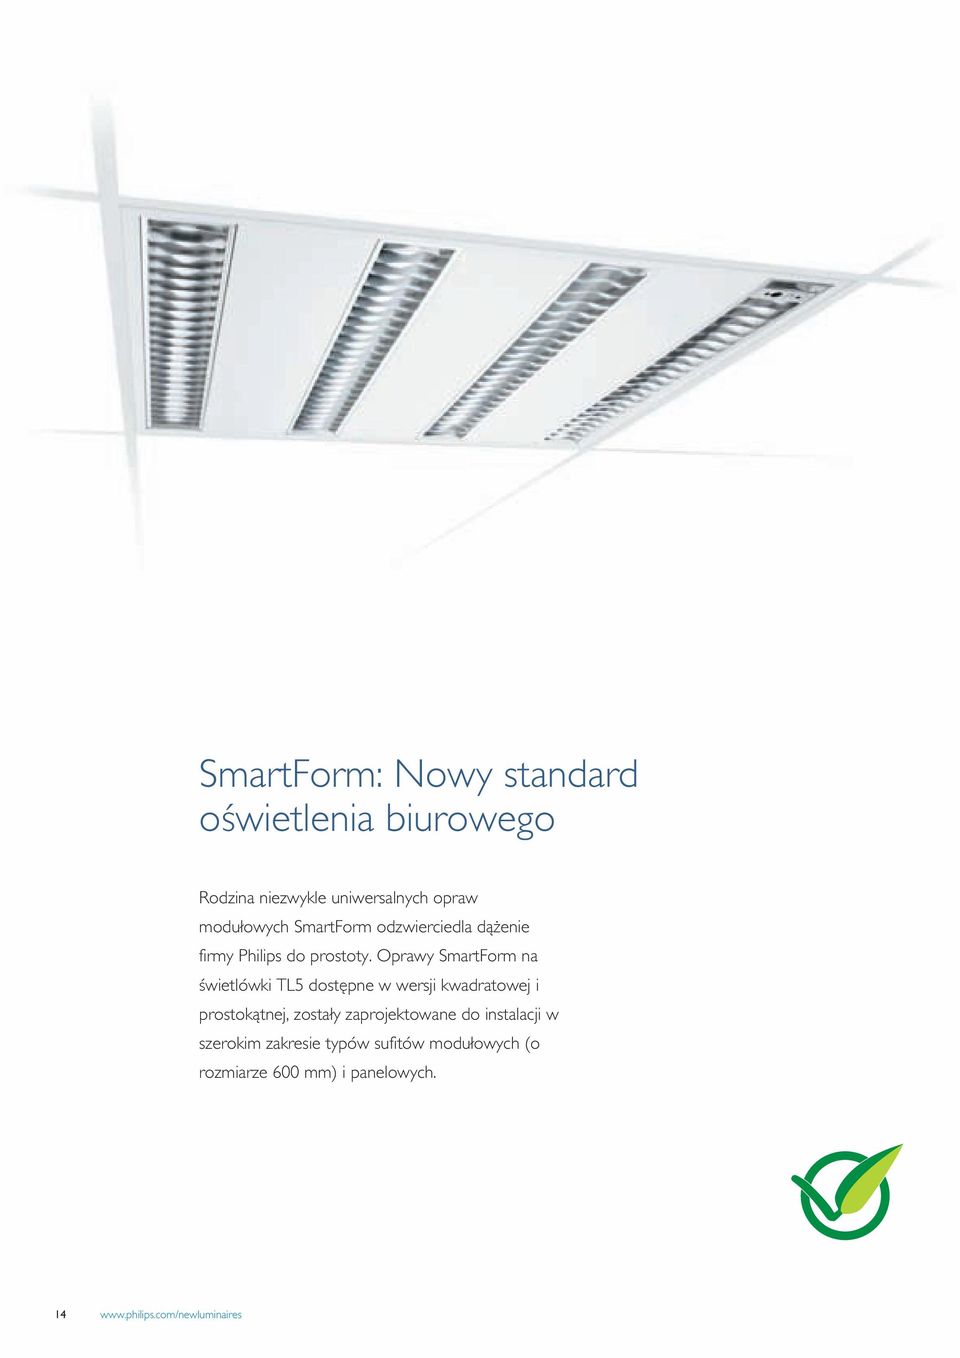 Oprawy SmartForm na świetlówki TL5 dostępne w wersji kwadratowej i prostokątnej, zostały